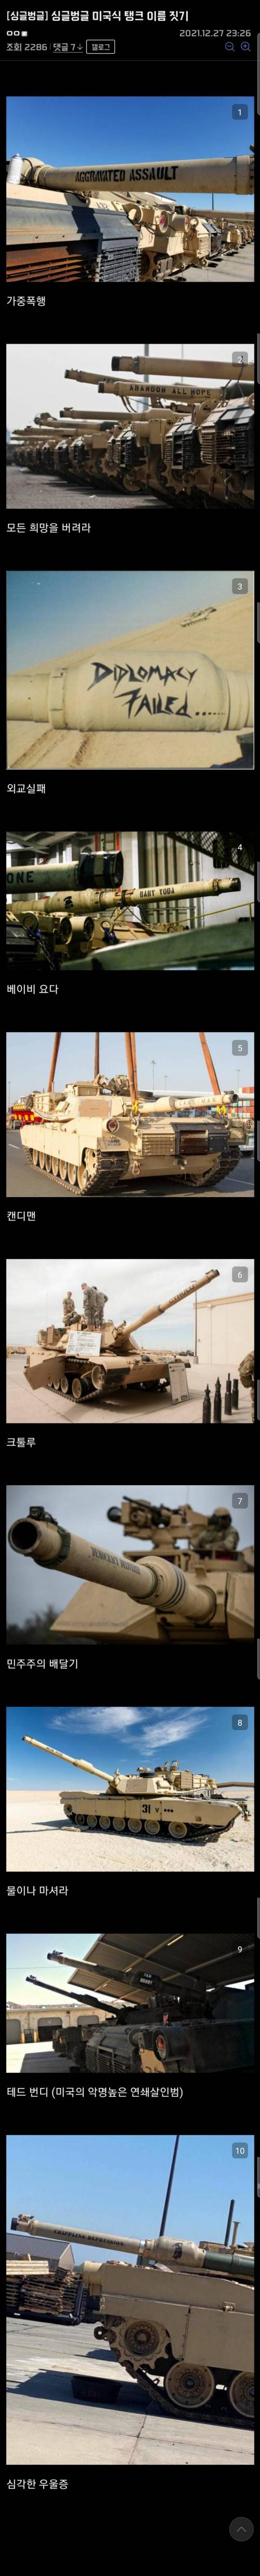 10 미국식 탱크 이름 짓기.jpg